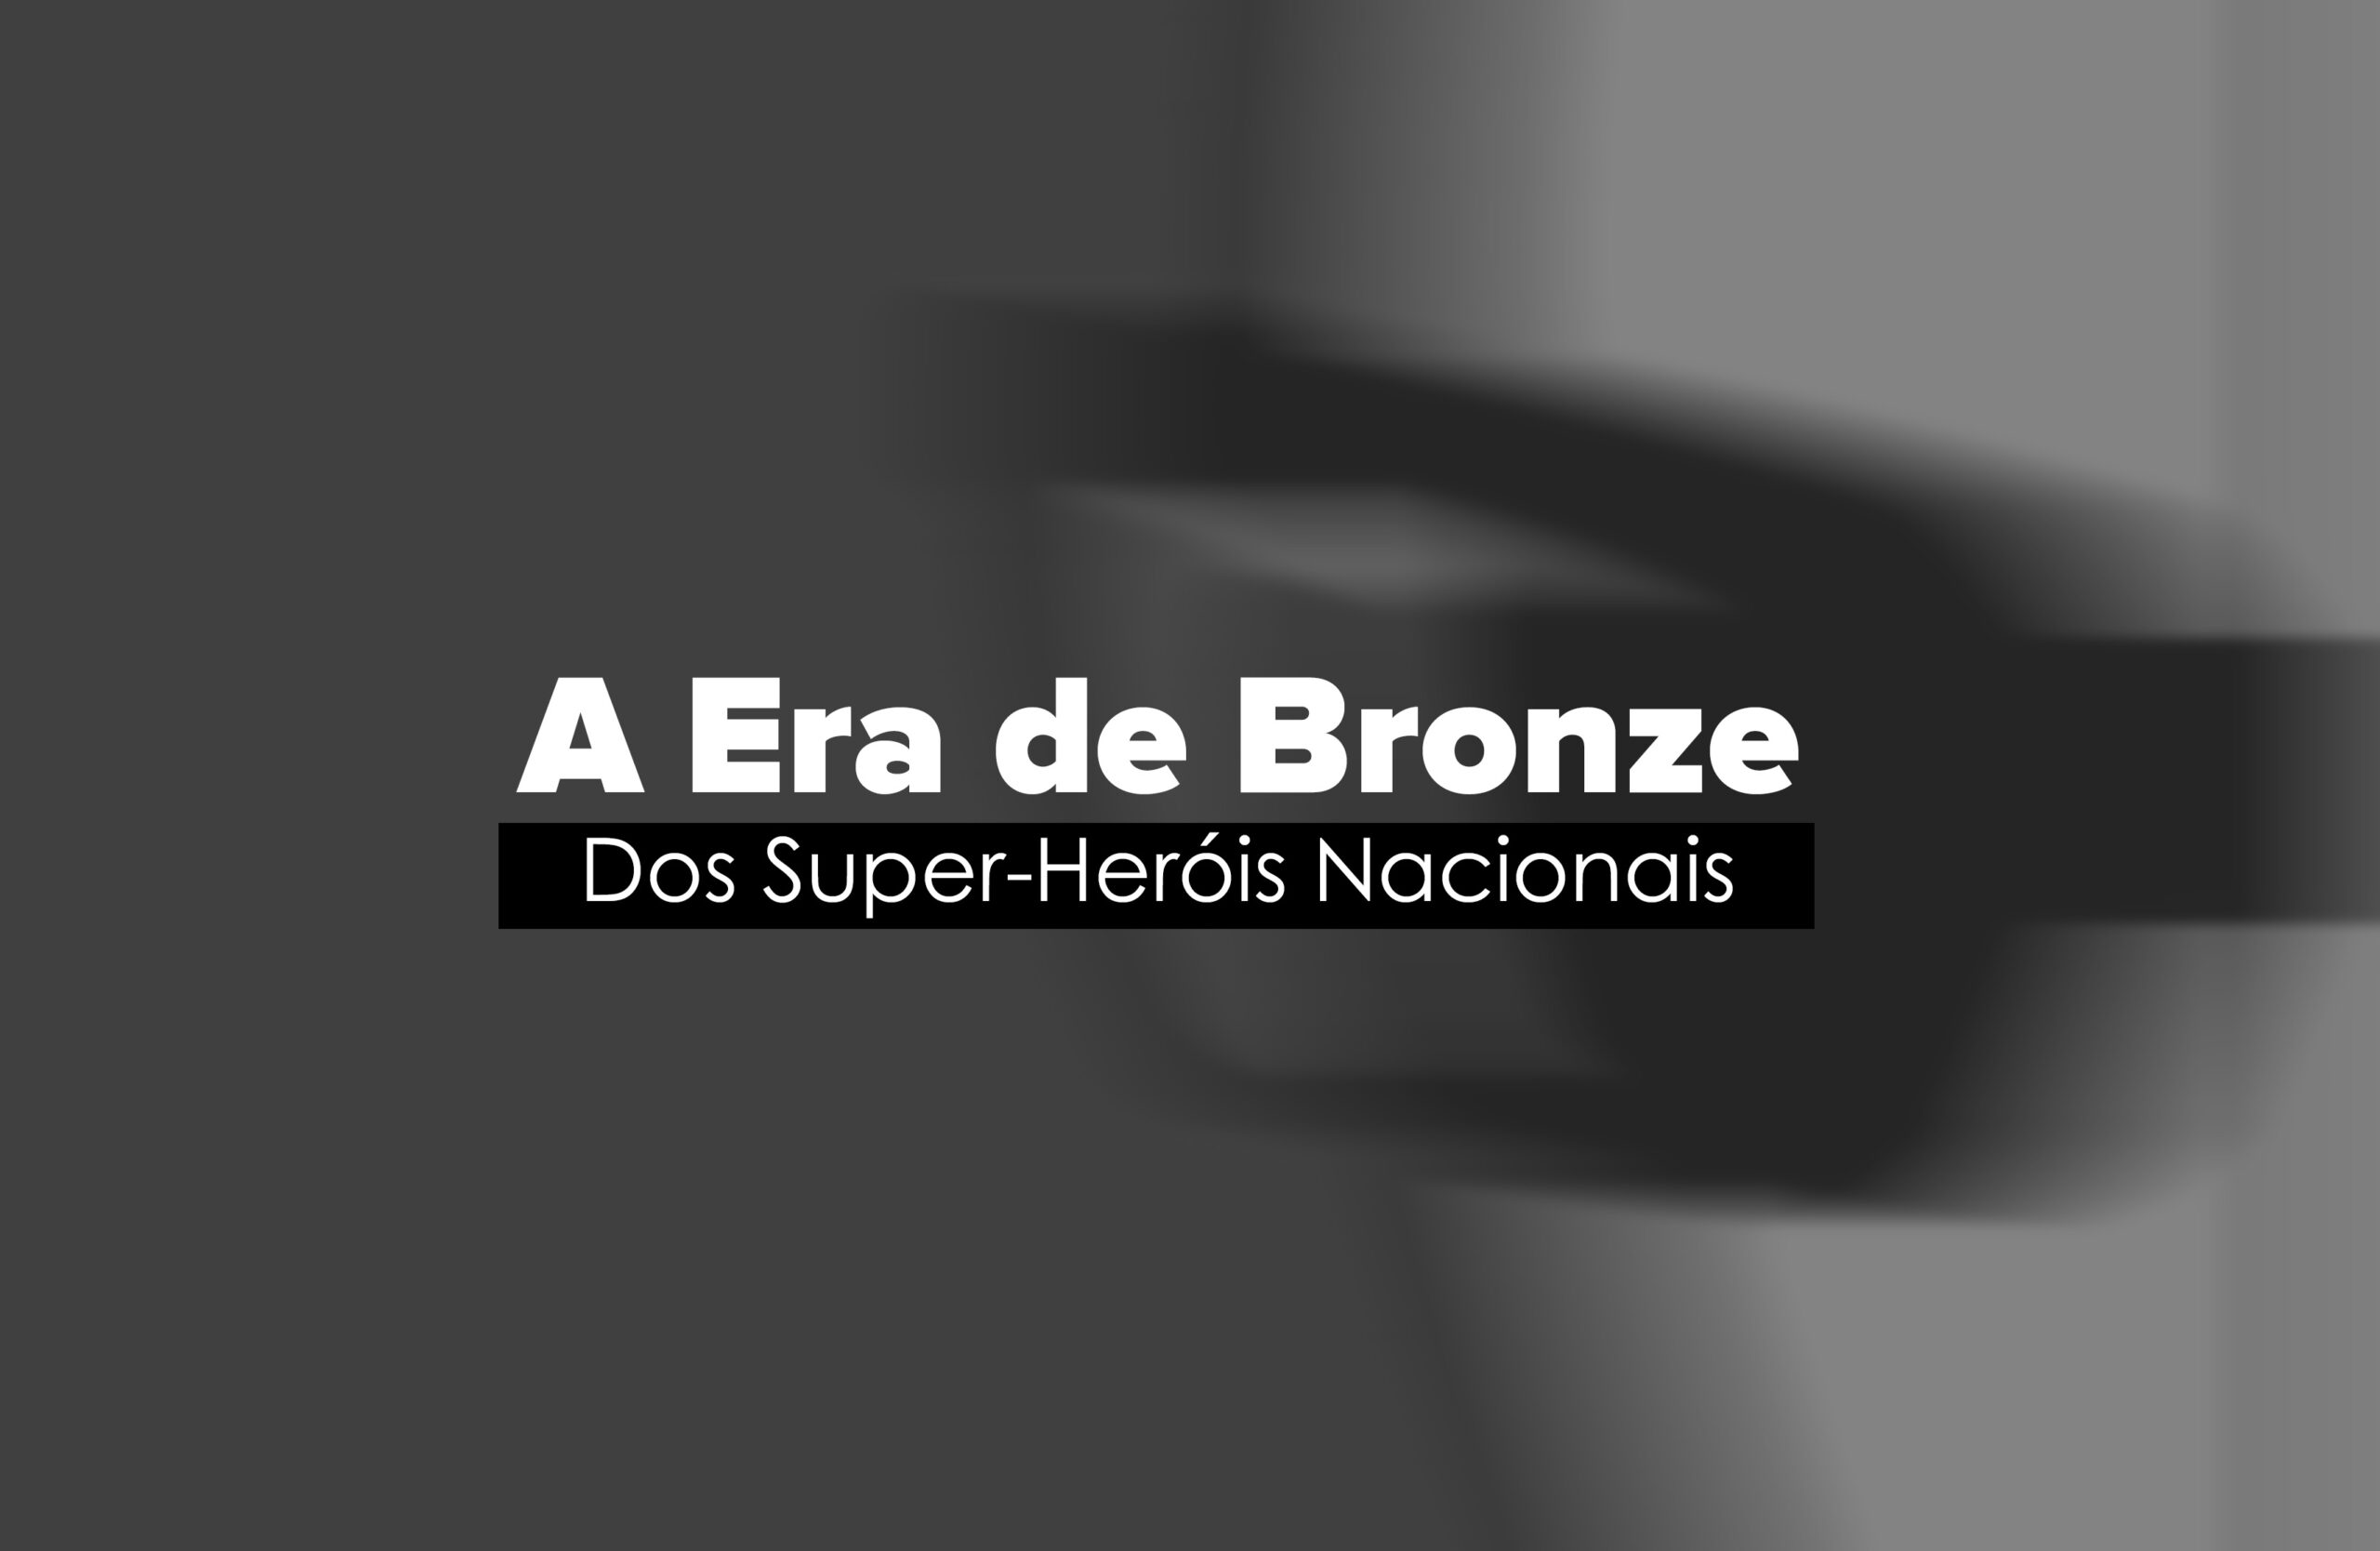 A Era de Bronze do Super-Heróis Nacionais 16